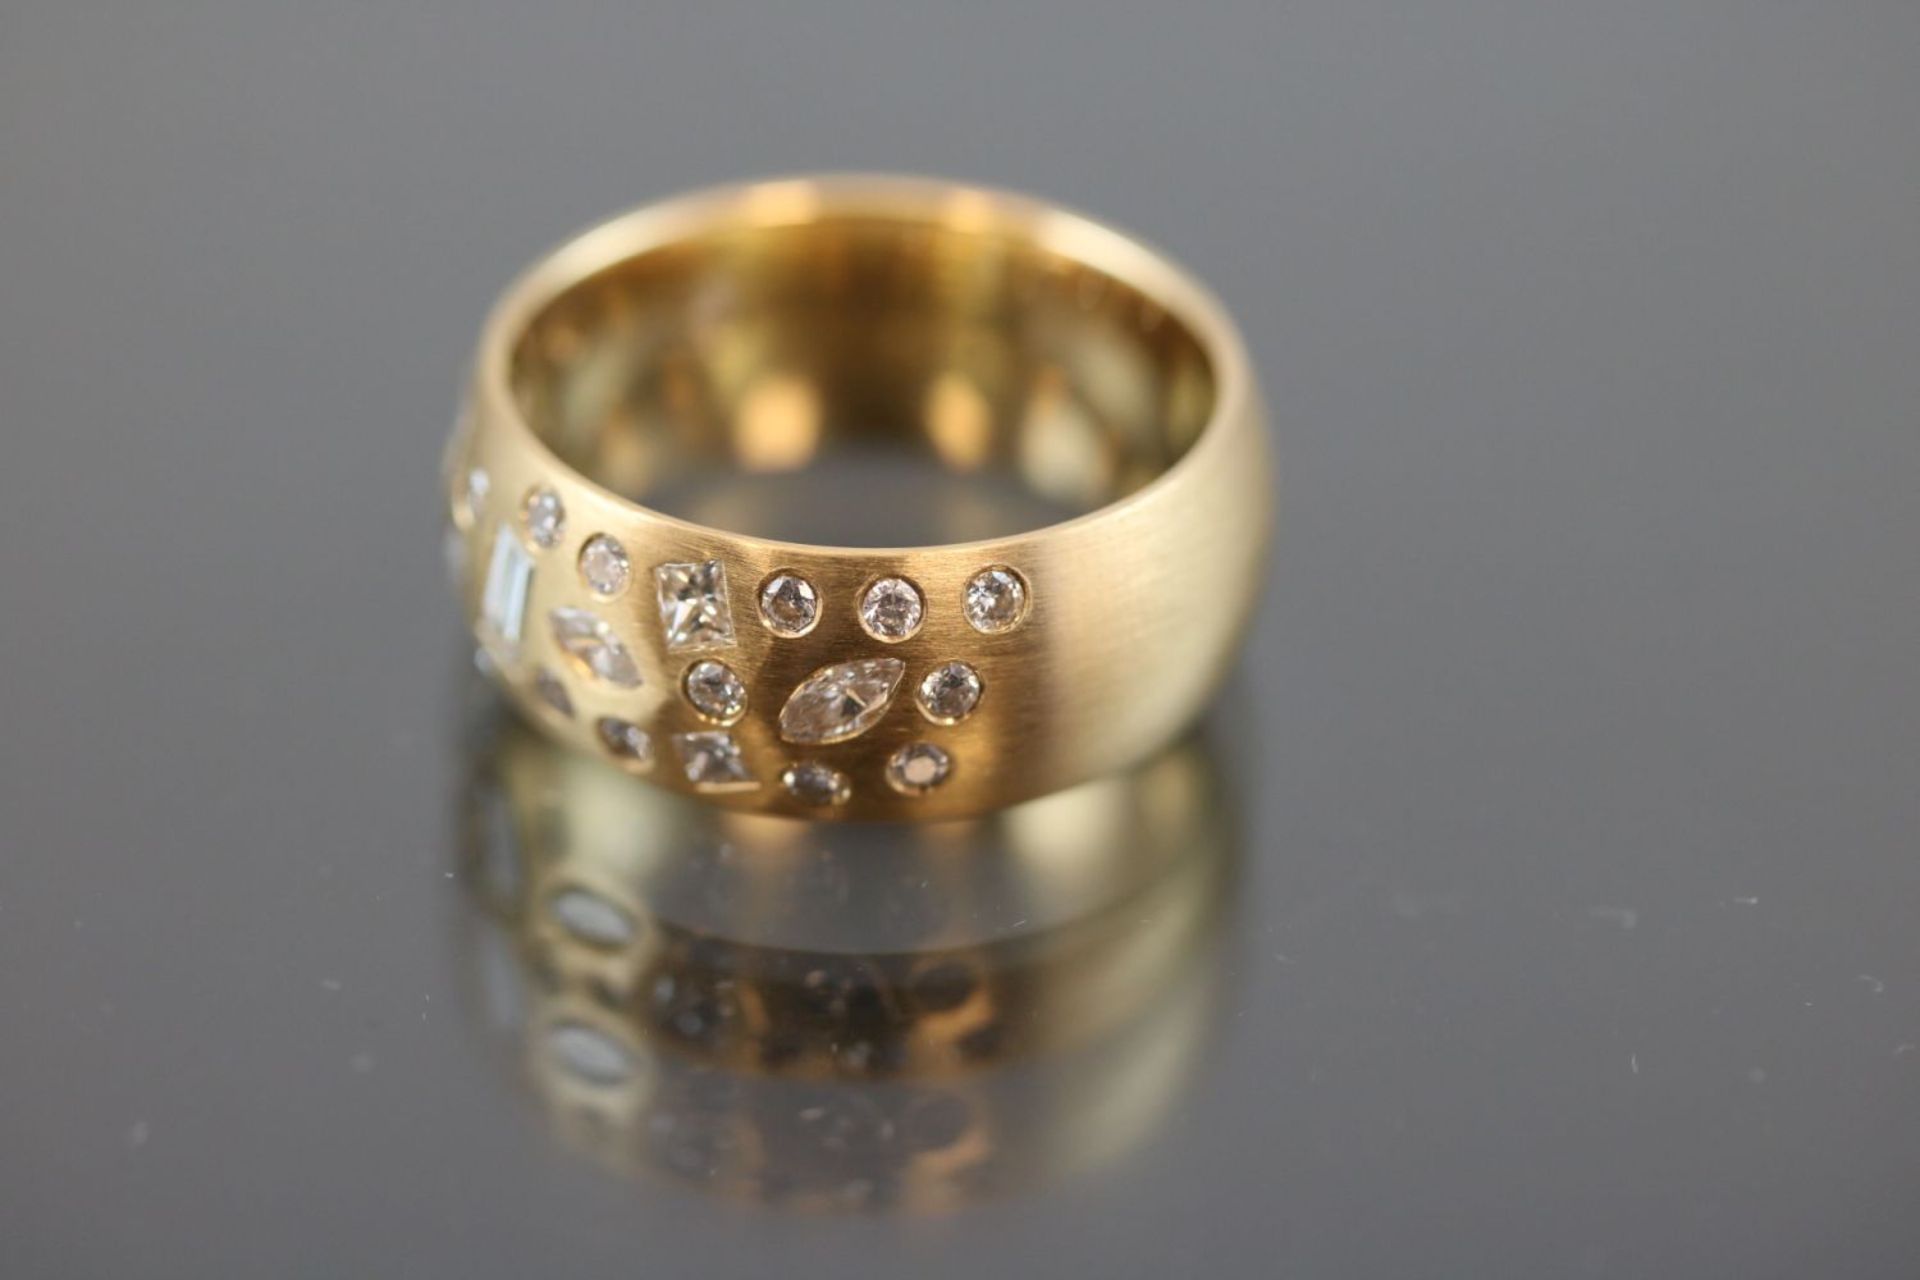 Design-Brillant-Ring, 750 Gelbgold10 Gramm 32 Brillanten / Diamanten, 2,37 ct., w/si. Ringgröße: - Bild 2 aus 3